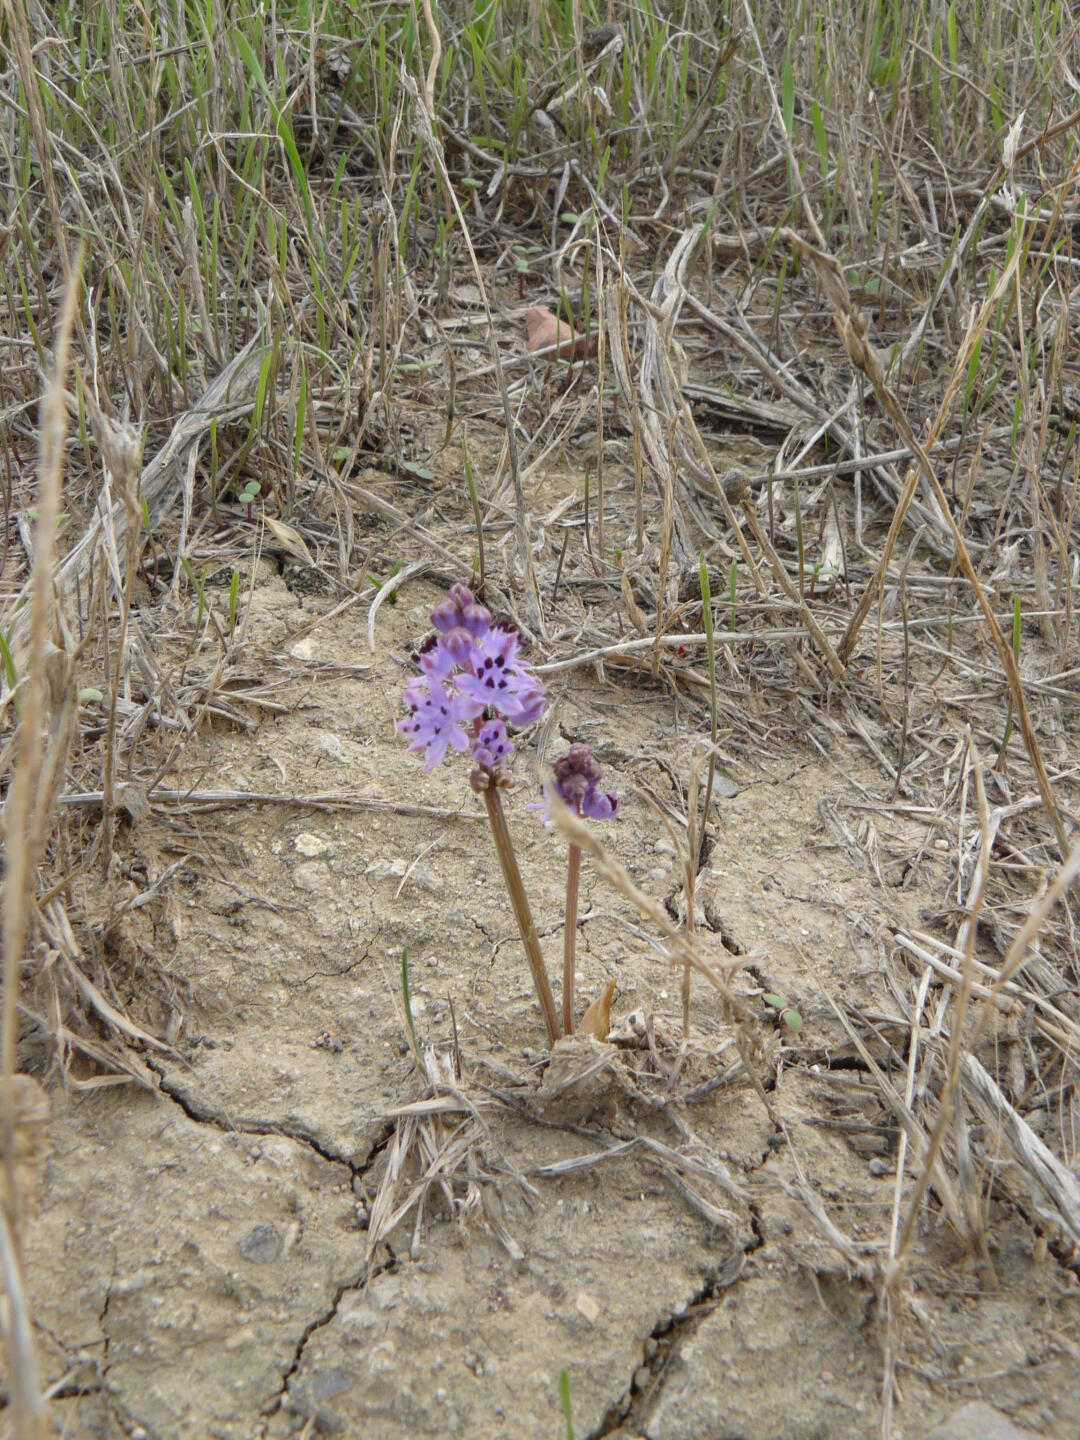 Orchidee in der Salzlandschaft von Macalube.